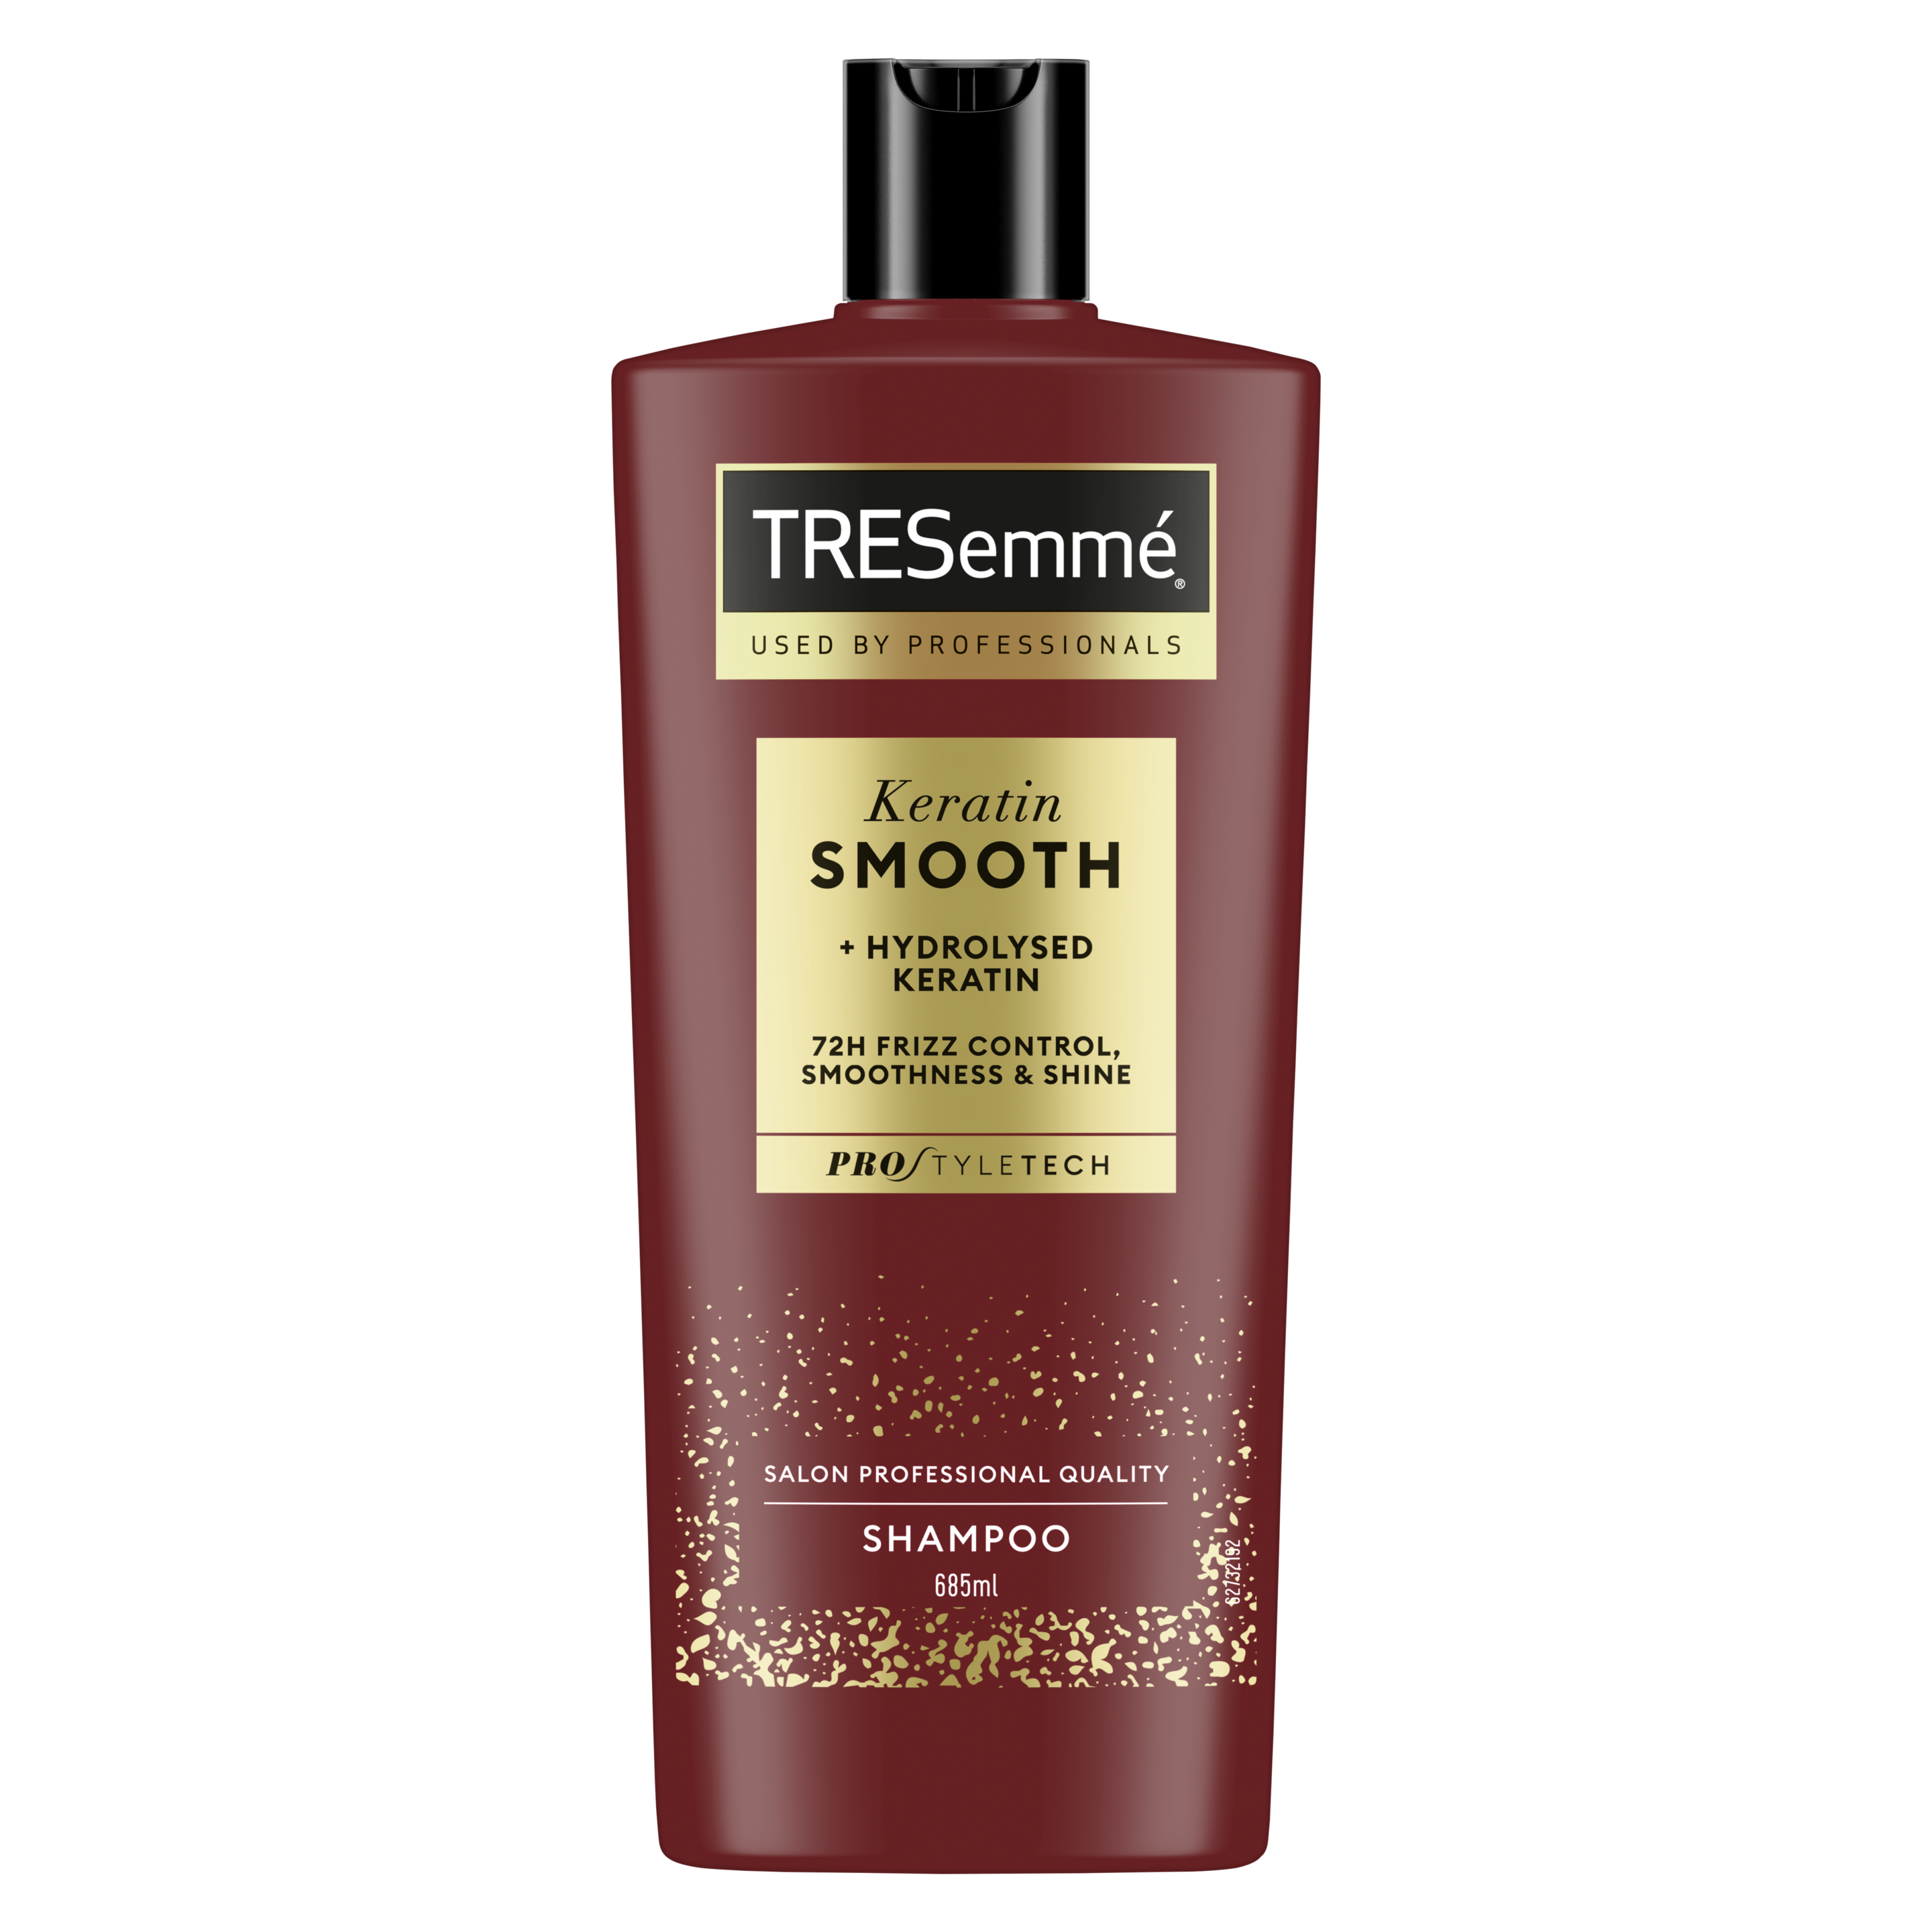 TRESemmé Keratin Smooth -shampoo 685ml